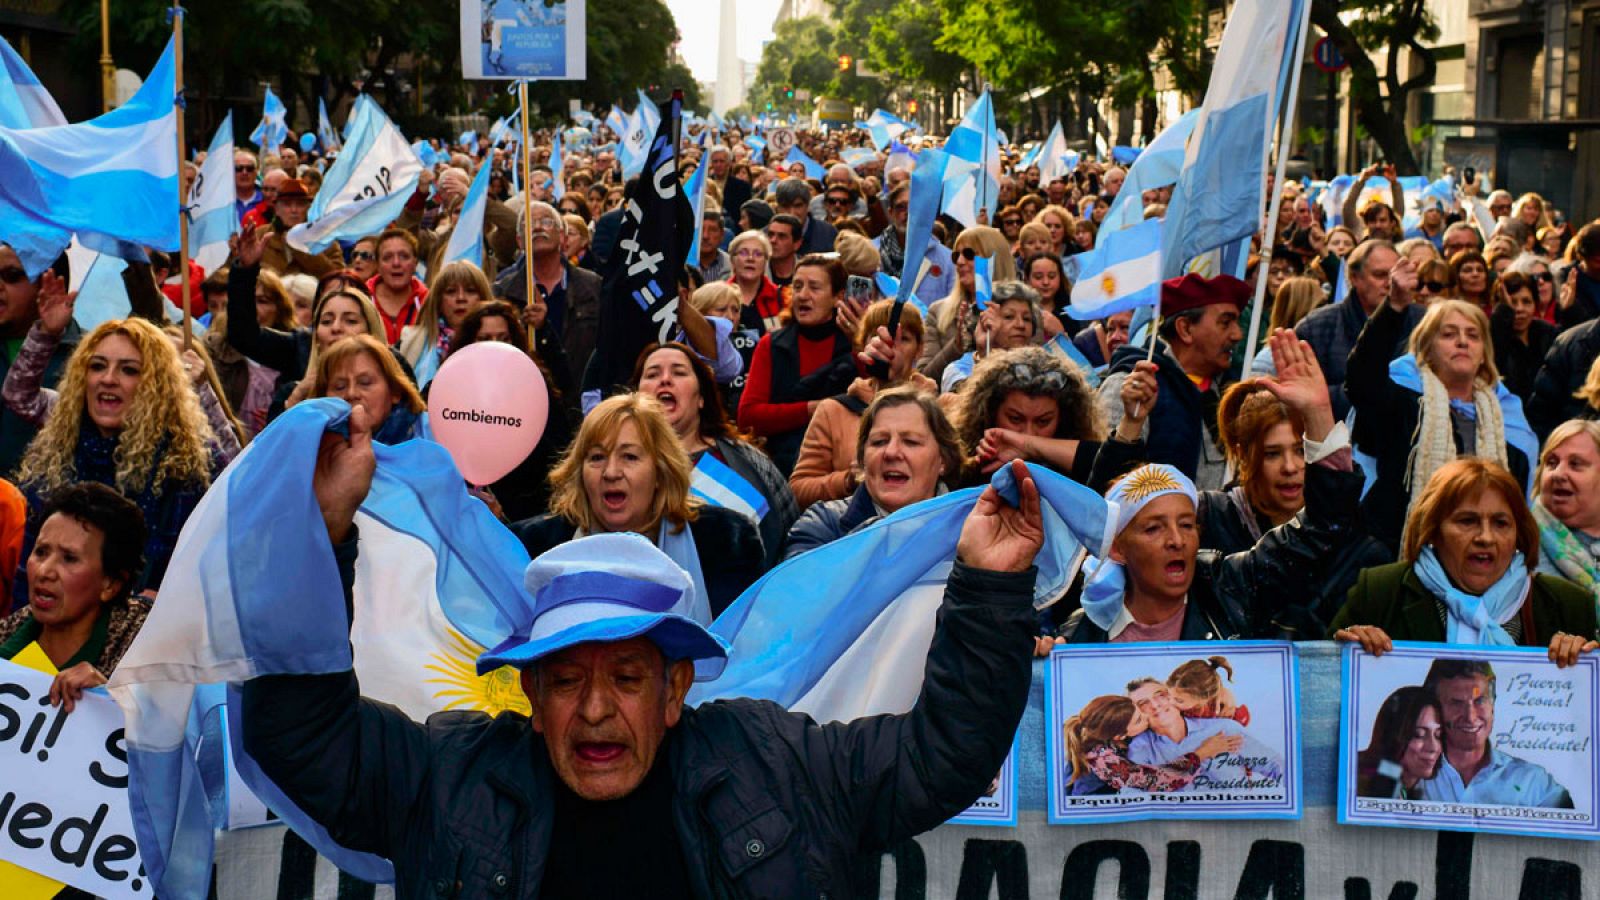 Imagen de la manifestación de apoyo a Mauricio Macri el sábado 24 de agosto de 2019 en Buenos Aires, Argentina.